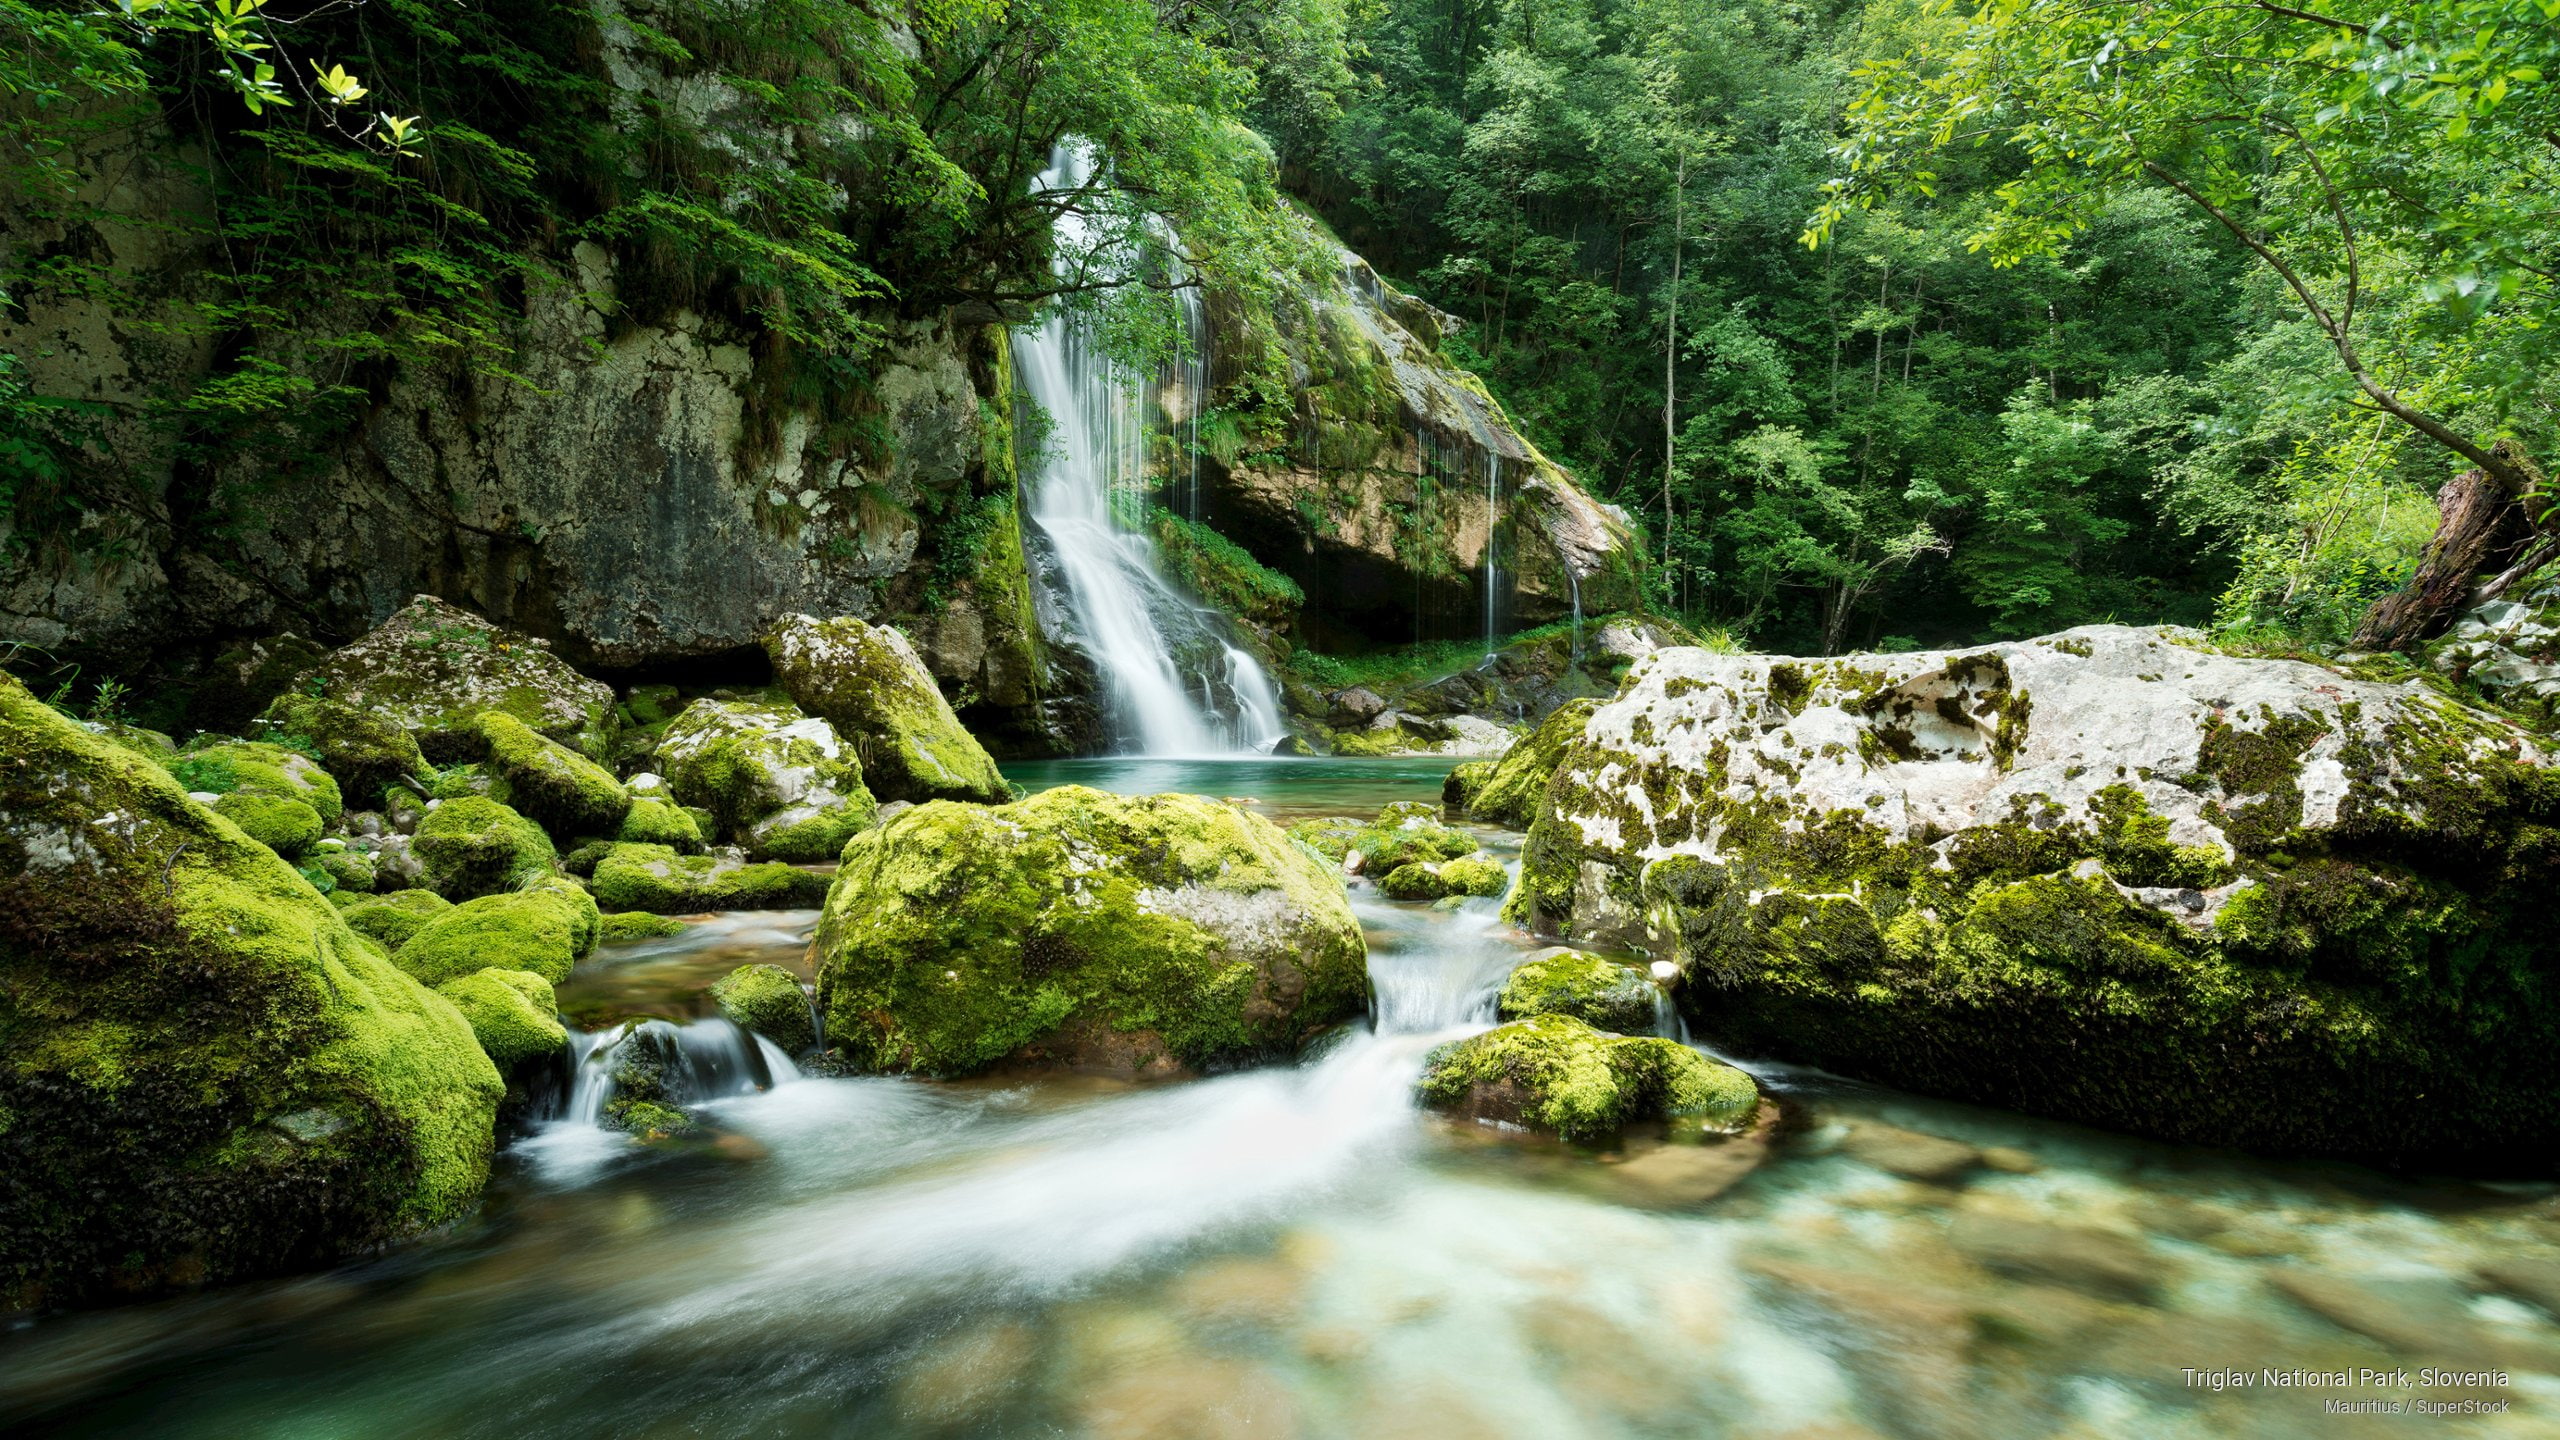 Triglav National Park, Slovenia, National Parks